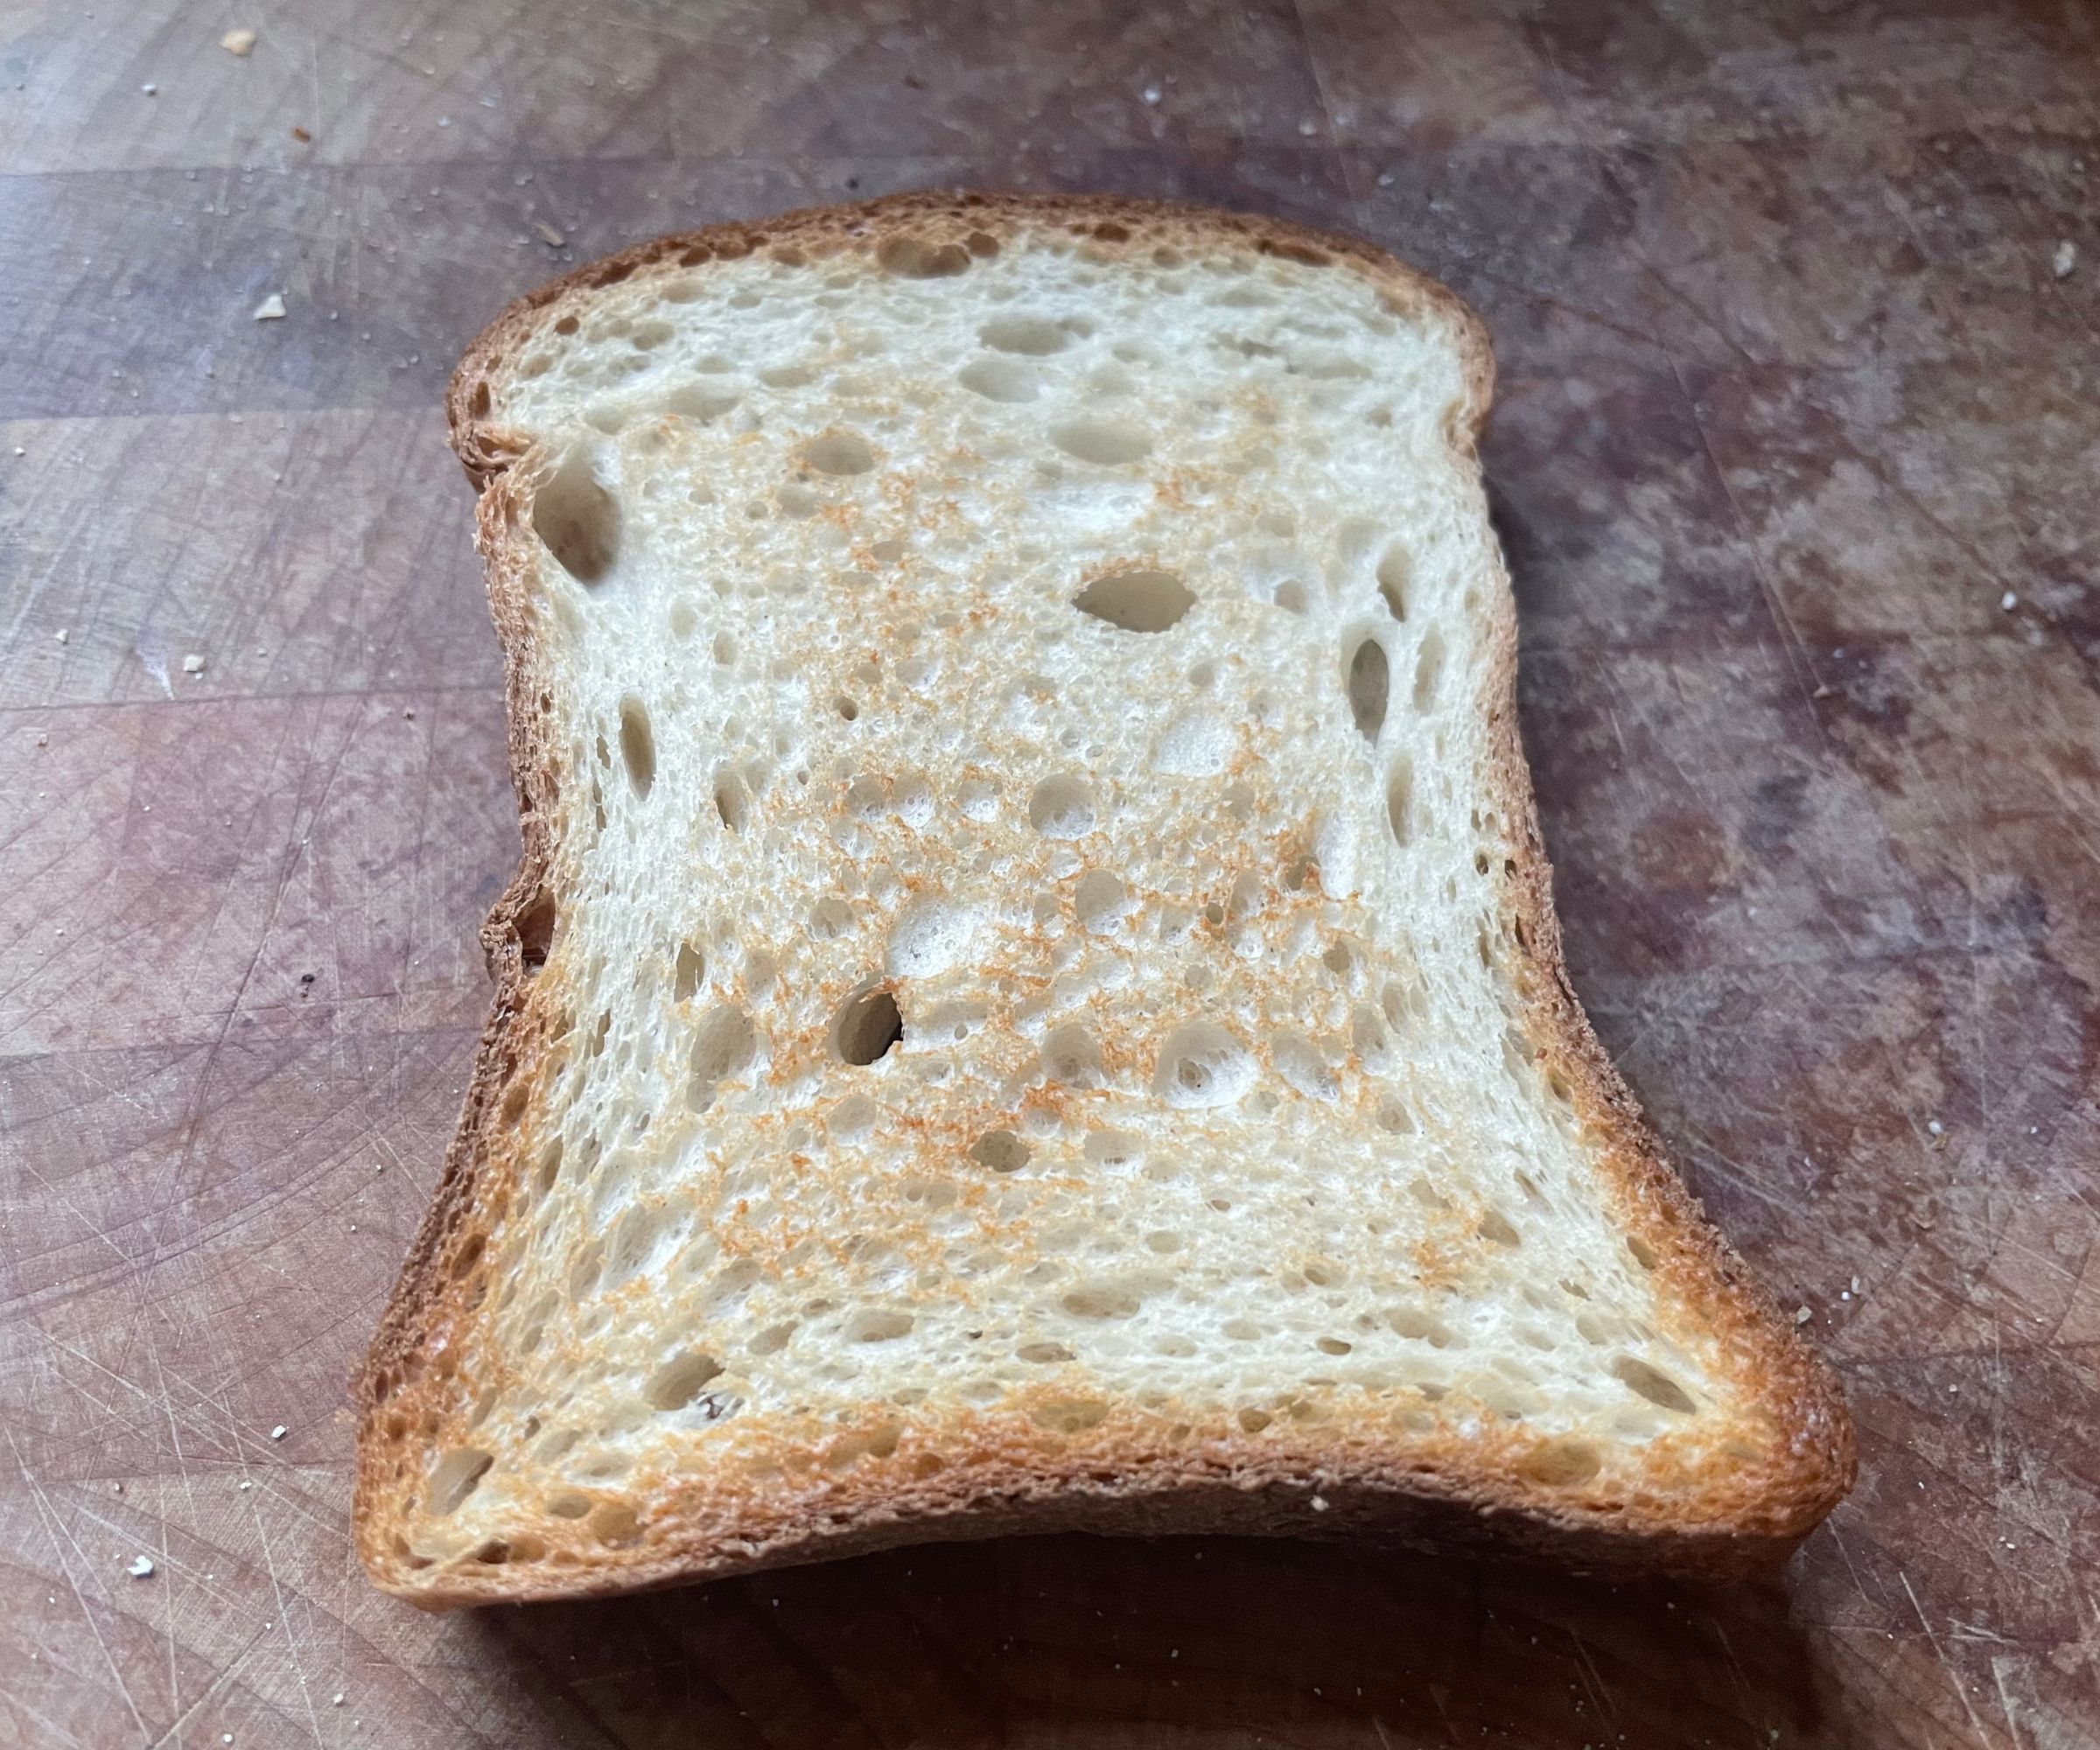 KitchenAid Artisan 2-Slice Toaster gkuten-free bread